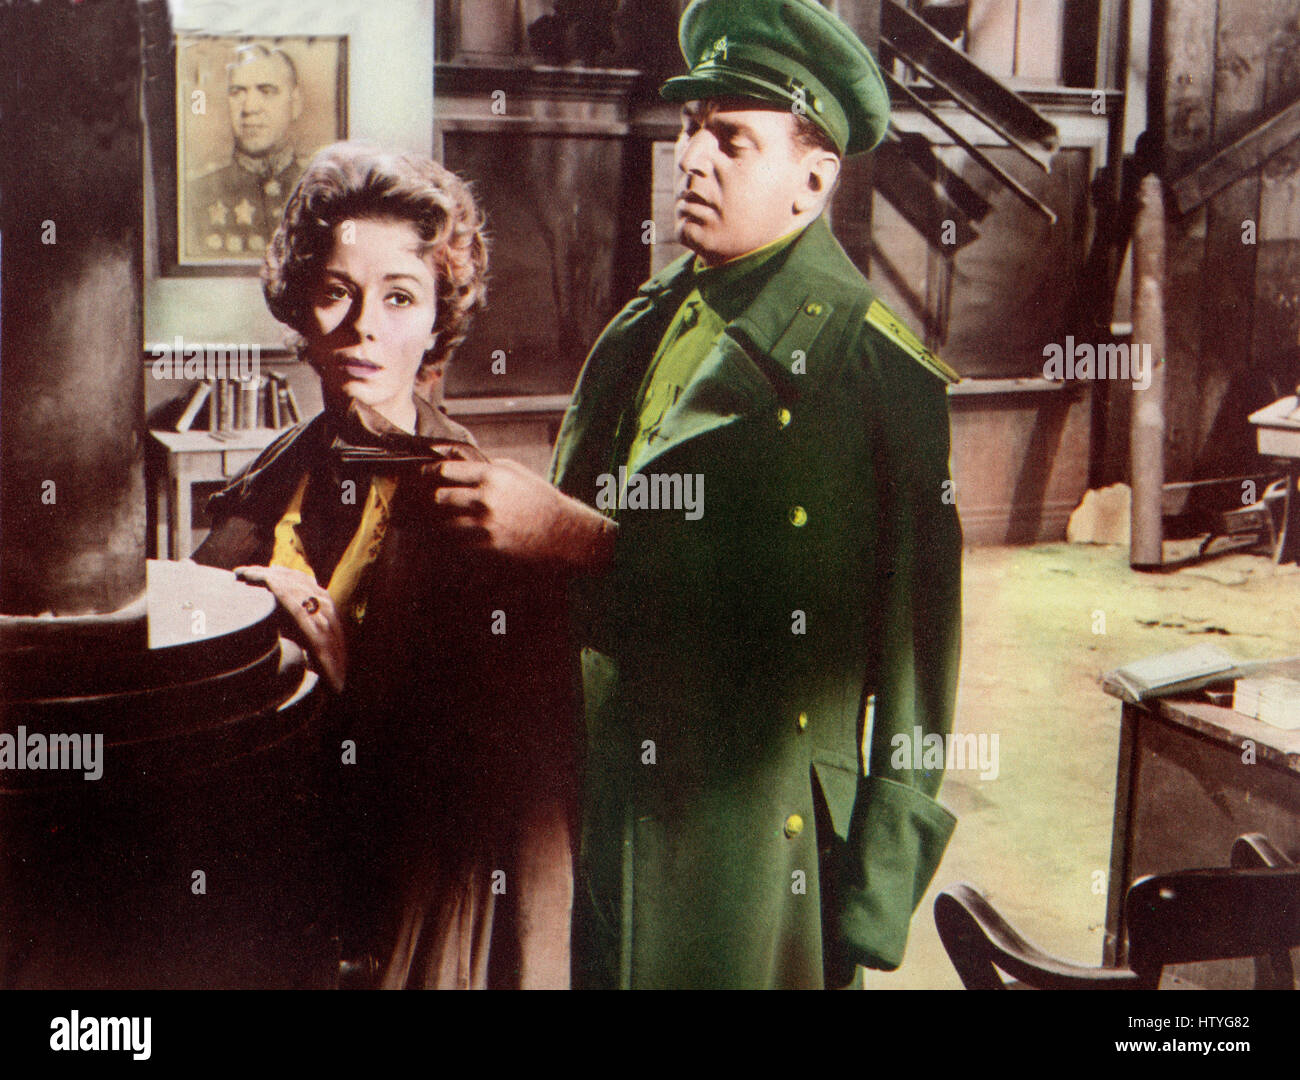 Fraulein, alias : Fräulein, USA 1958, Regie : Henry Koster, acteurs : Dana Wynter, Theodore Bikel Banque D'Images